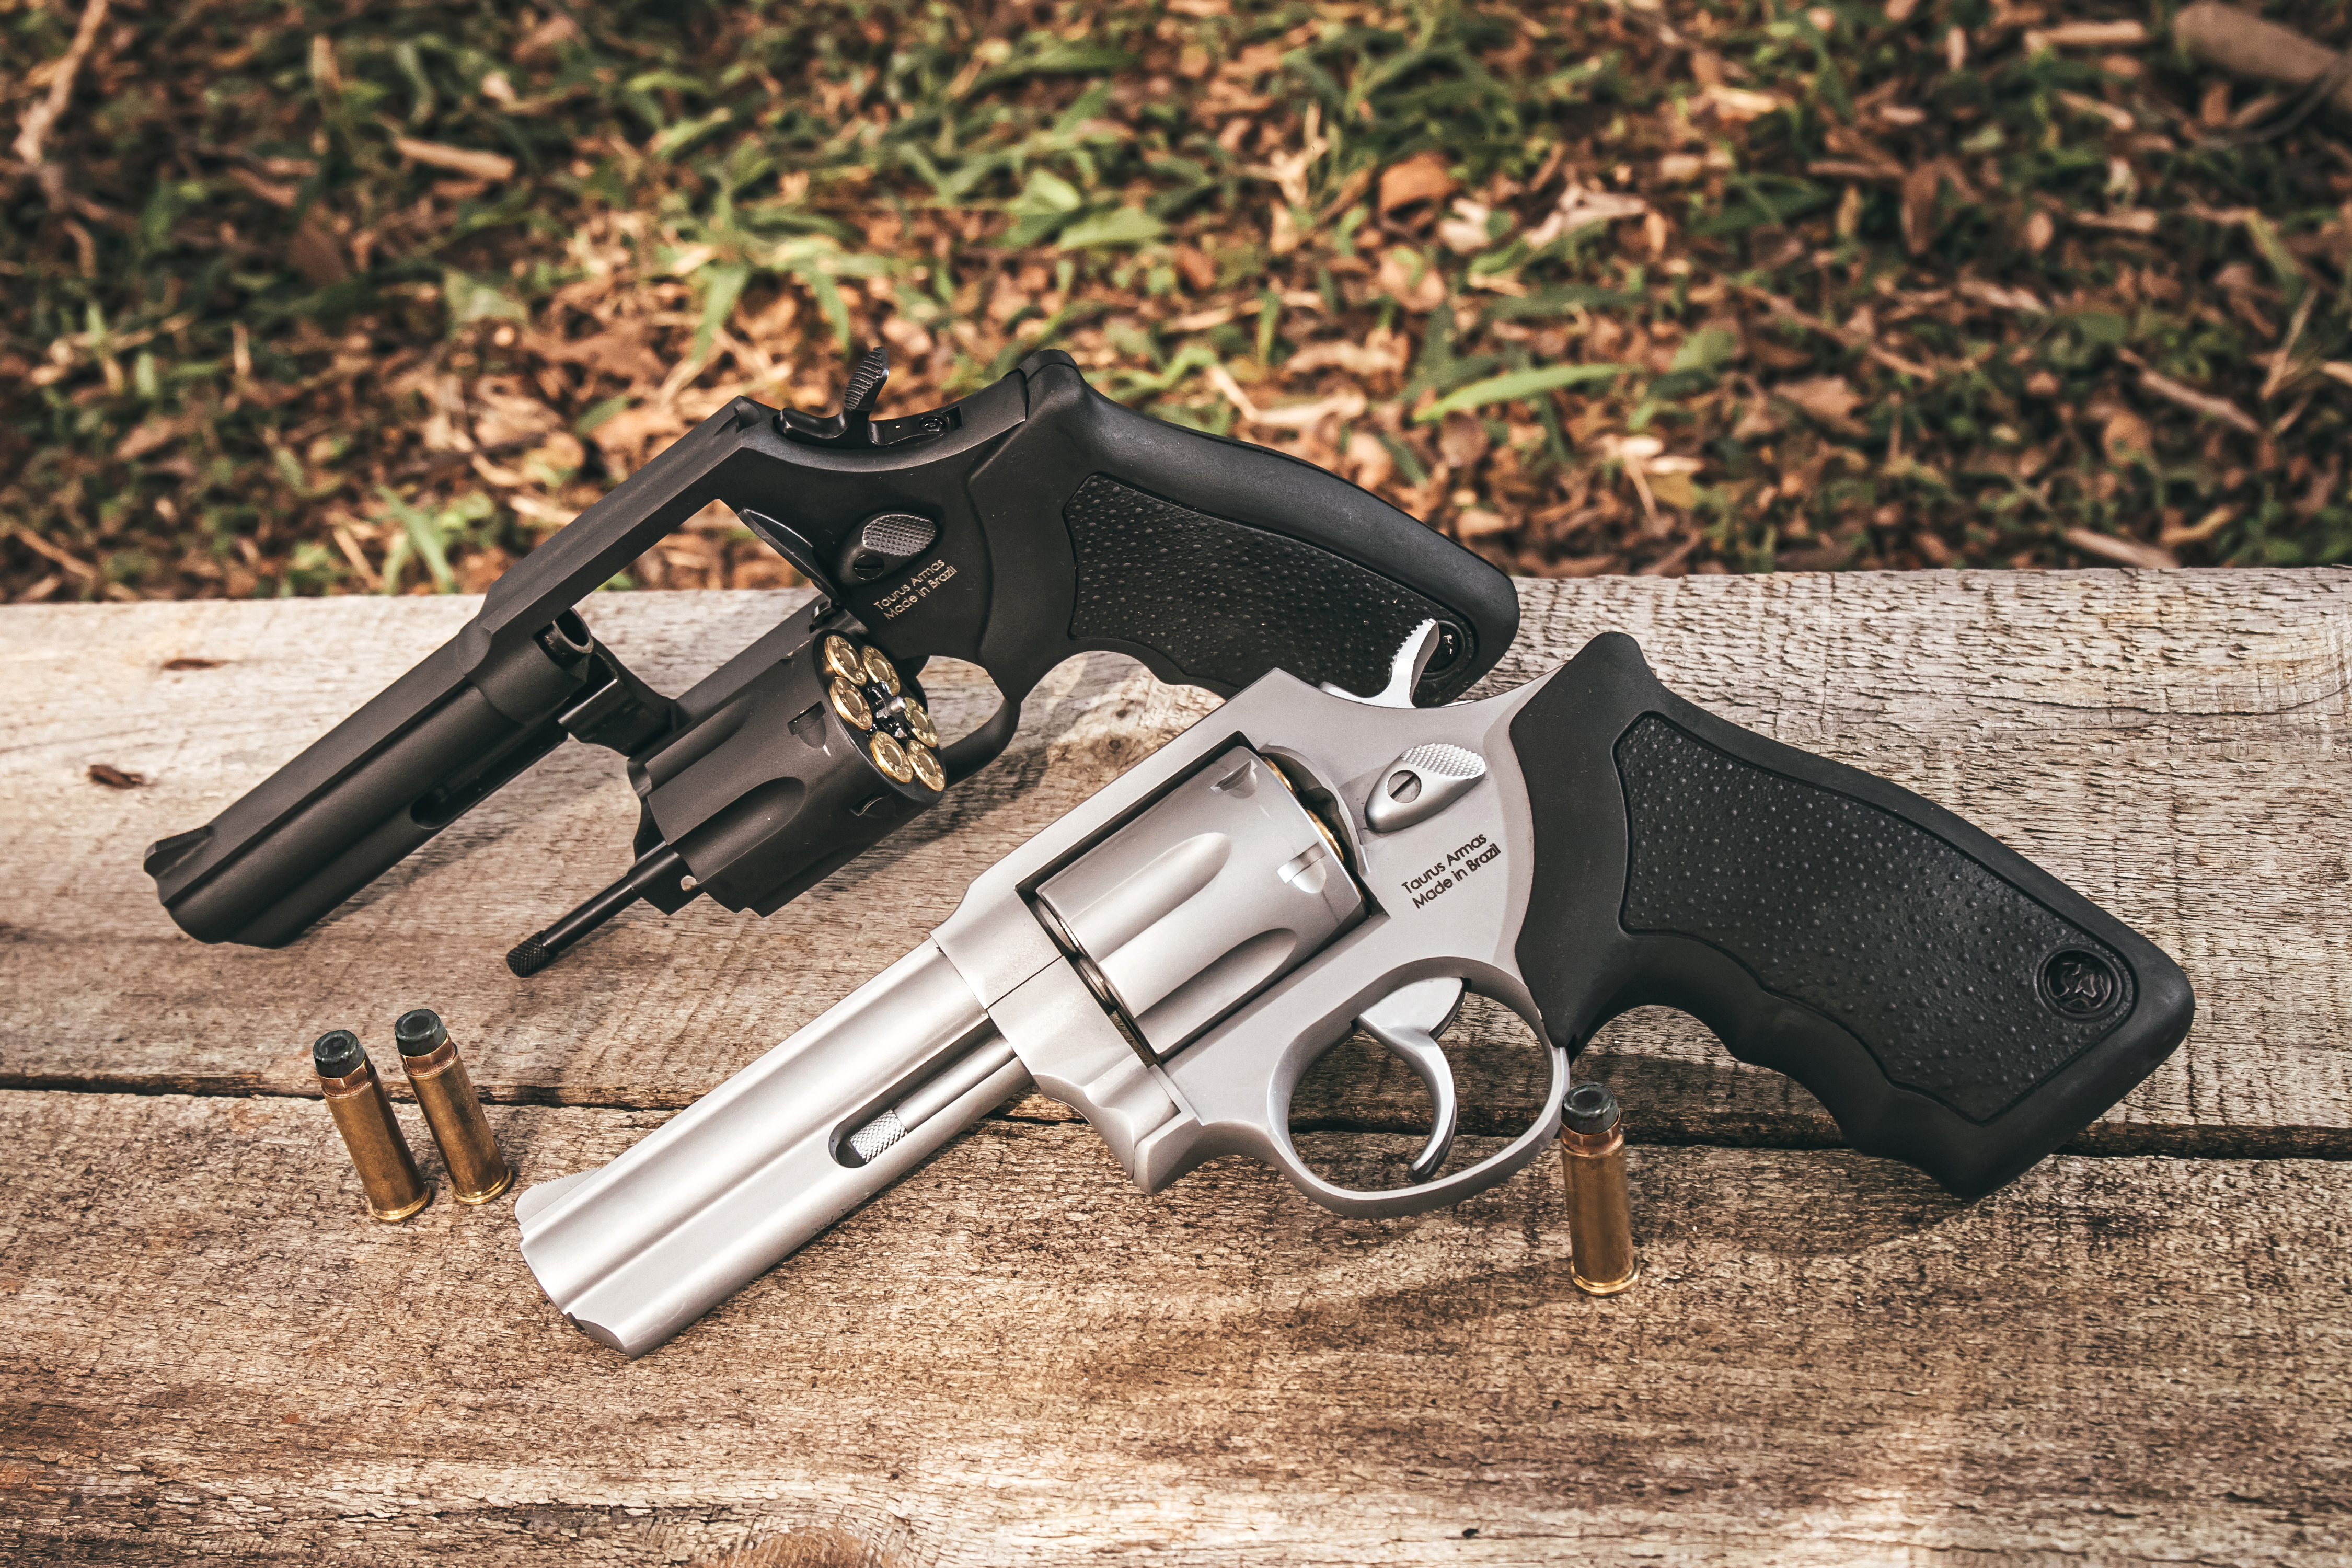 Taurus lança nova versão do clássico revólver RT 065, com calibre .357  Magnum e duas opções de acabamento